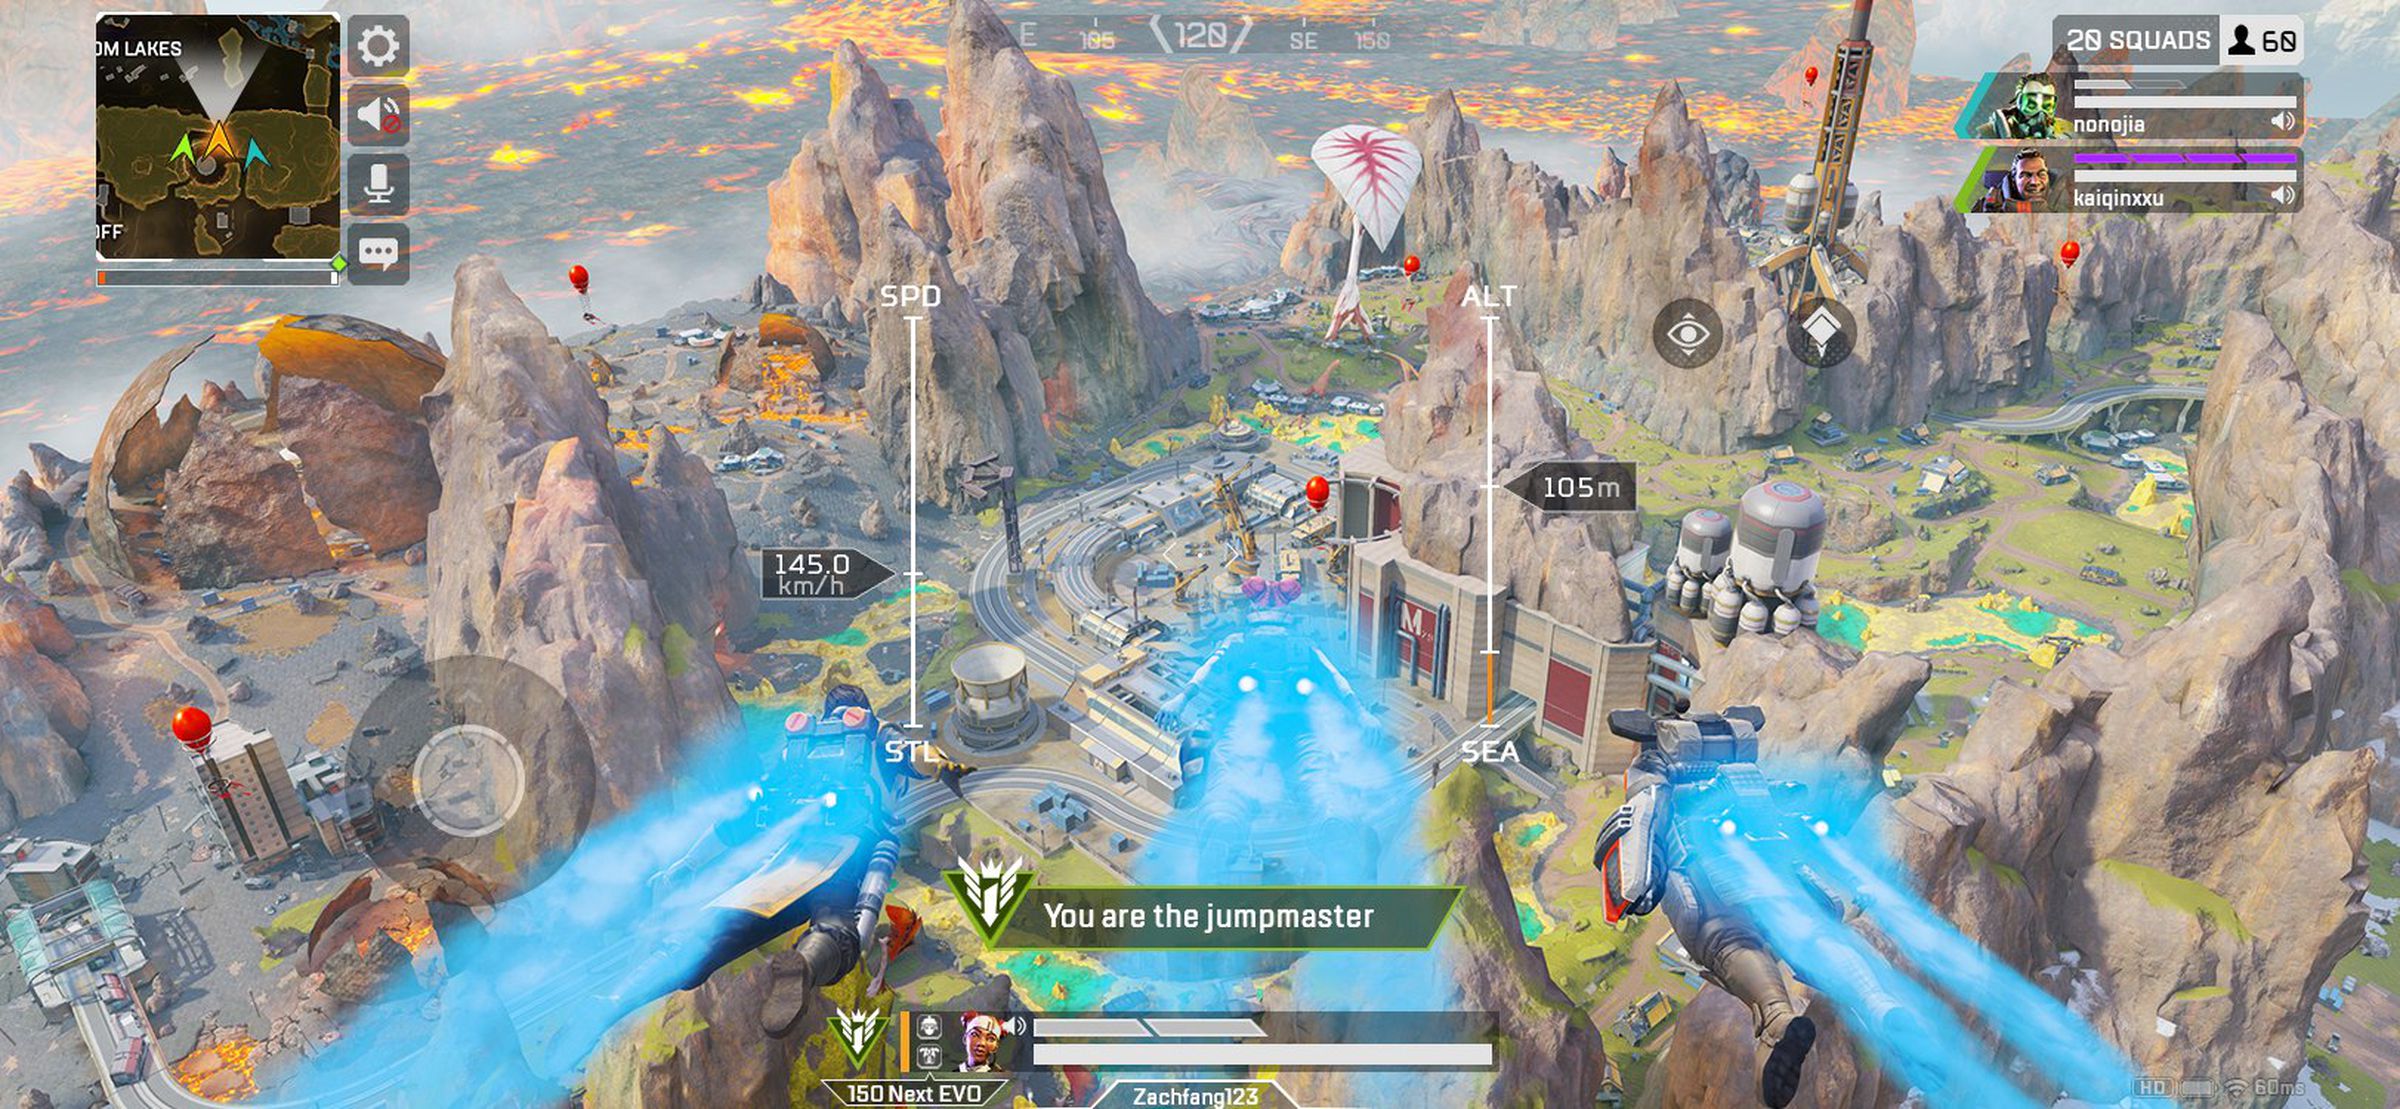 Apex Legends Mobile screenshot: A river flows through a rocky landscape;  a caption reads 